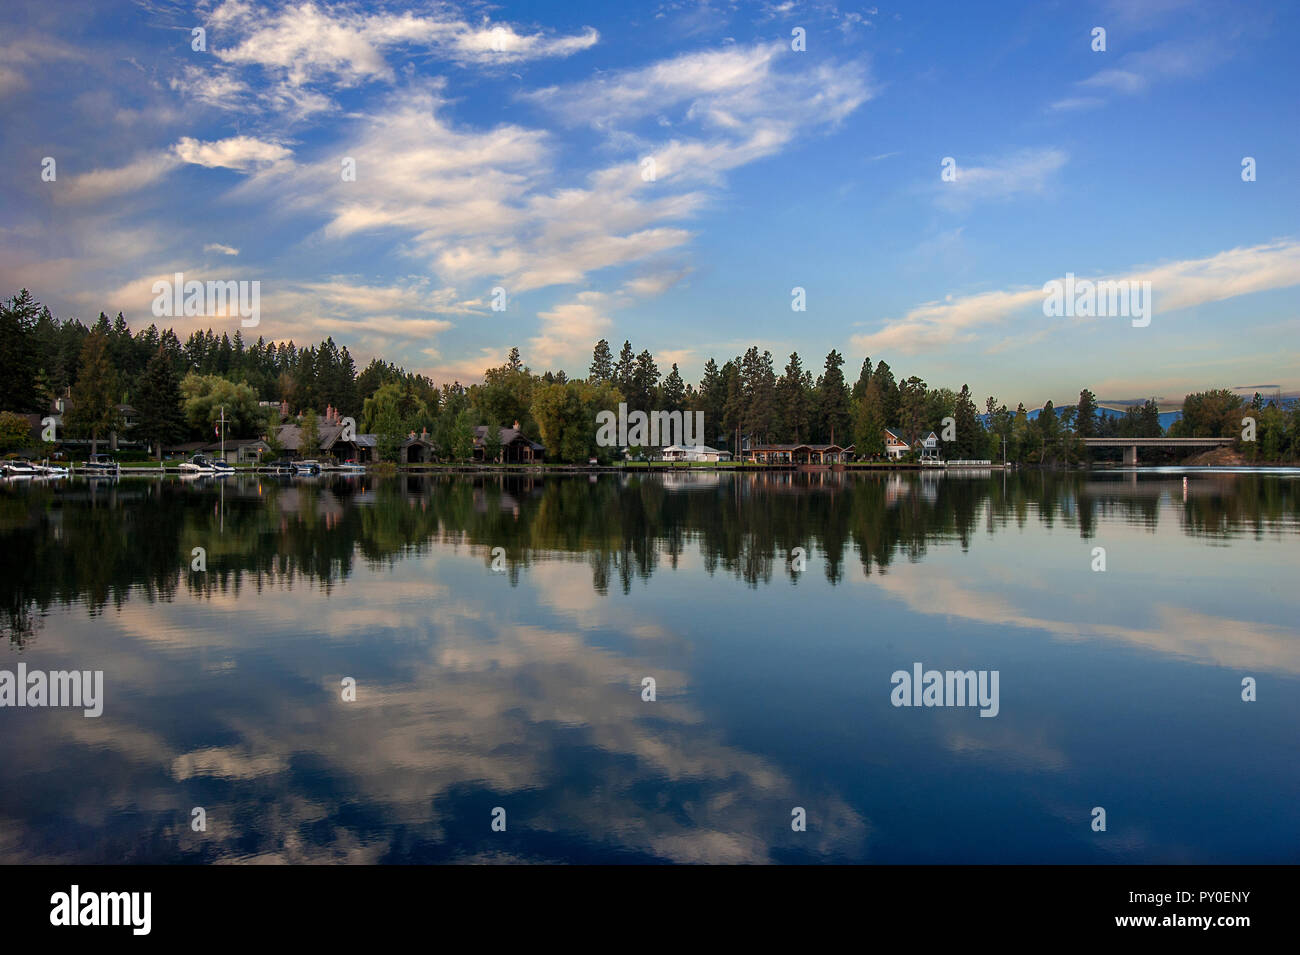 Lodges y los árboles se reflejan en el agua clara del lago Flathead, Montana, EE.UU. Foto de stock